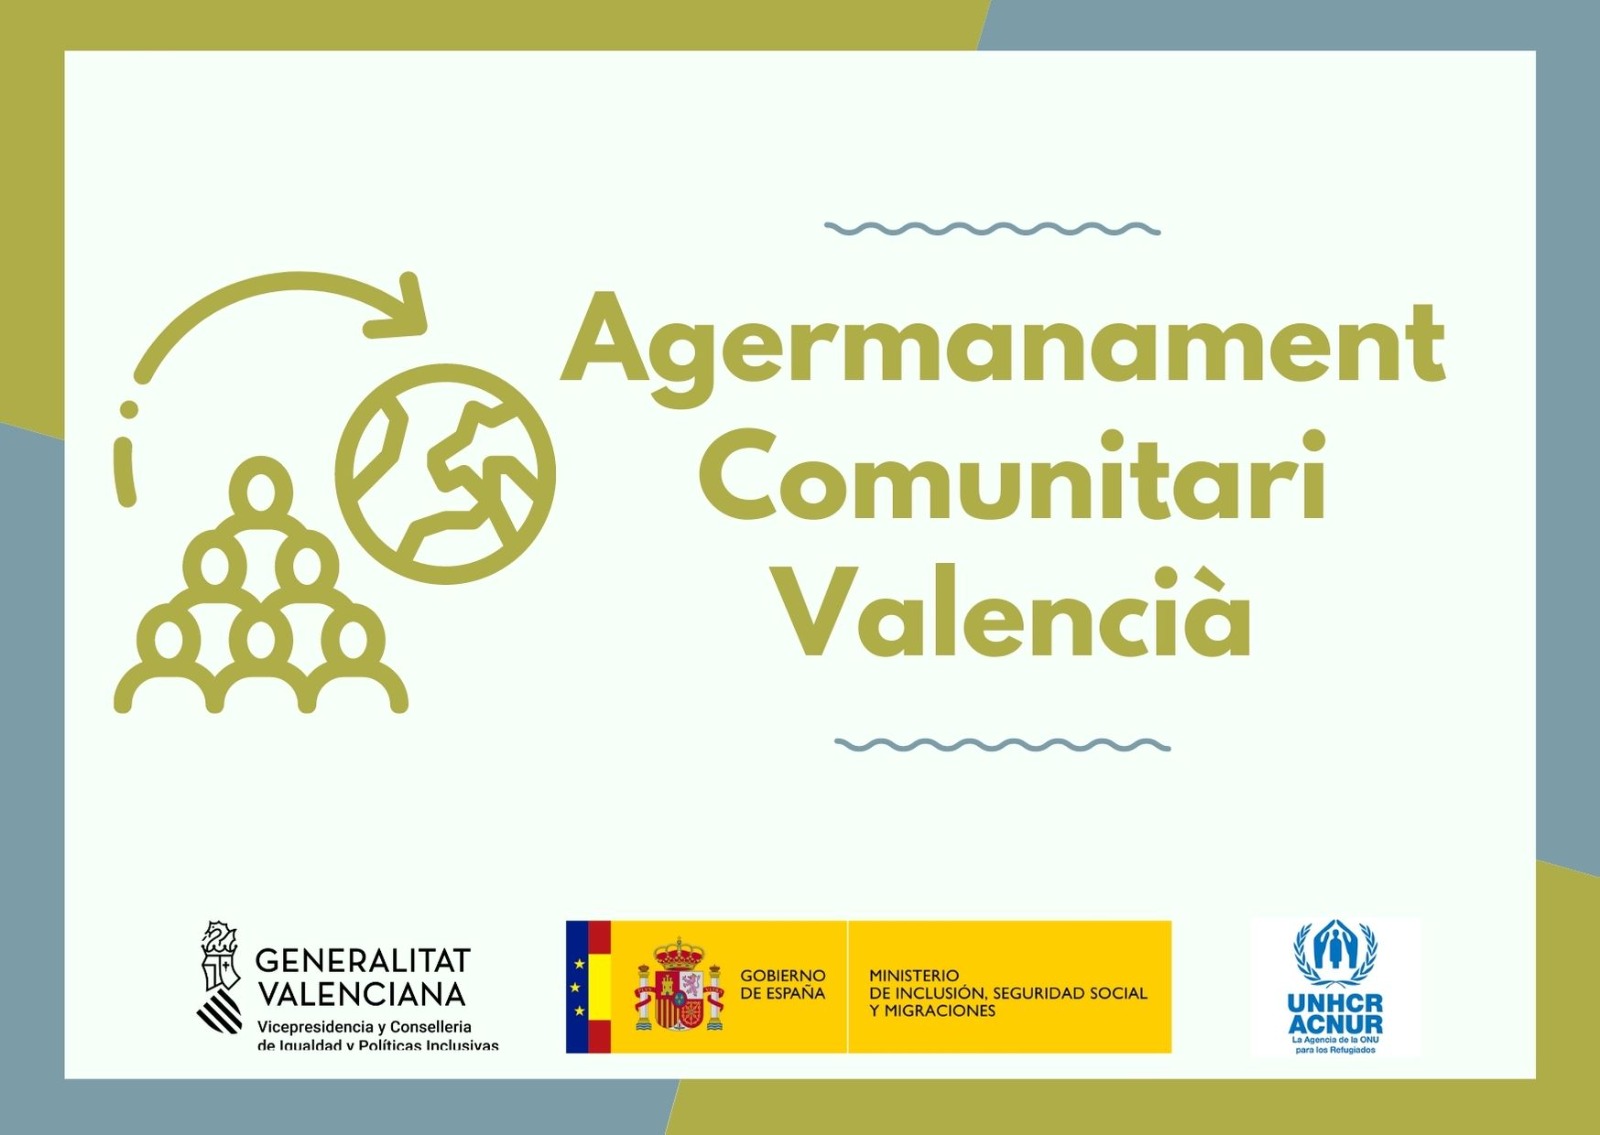 Igualdad pone en marcha en la Comunitat Valenciana un proyecto de acogimiento a personas refugiadas patrocinado por ACNUR que implica a la ciudadanía en la acogida